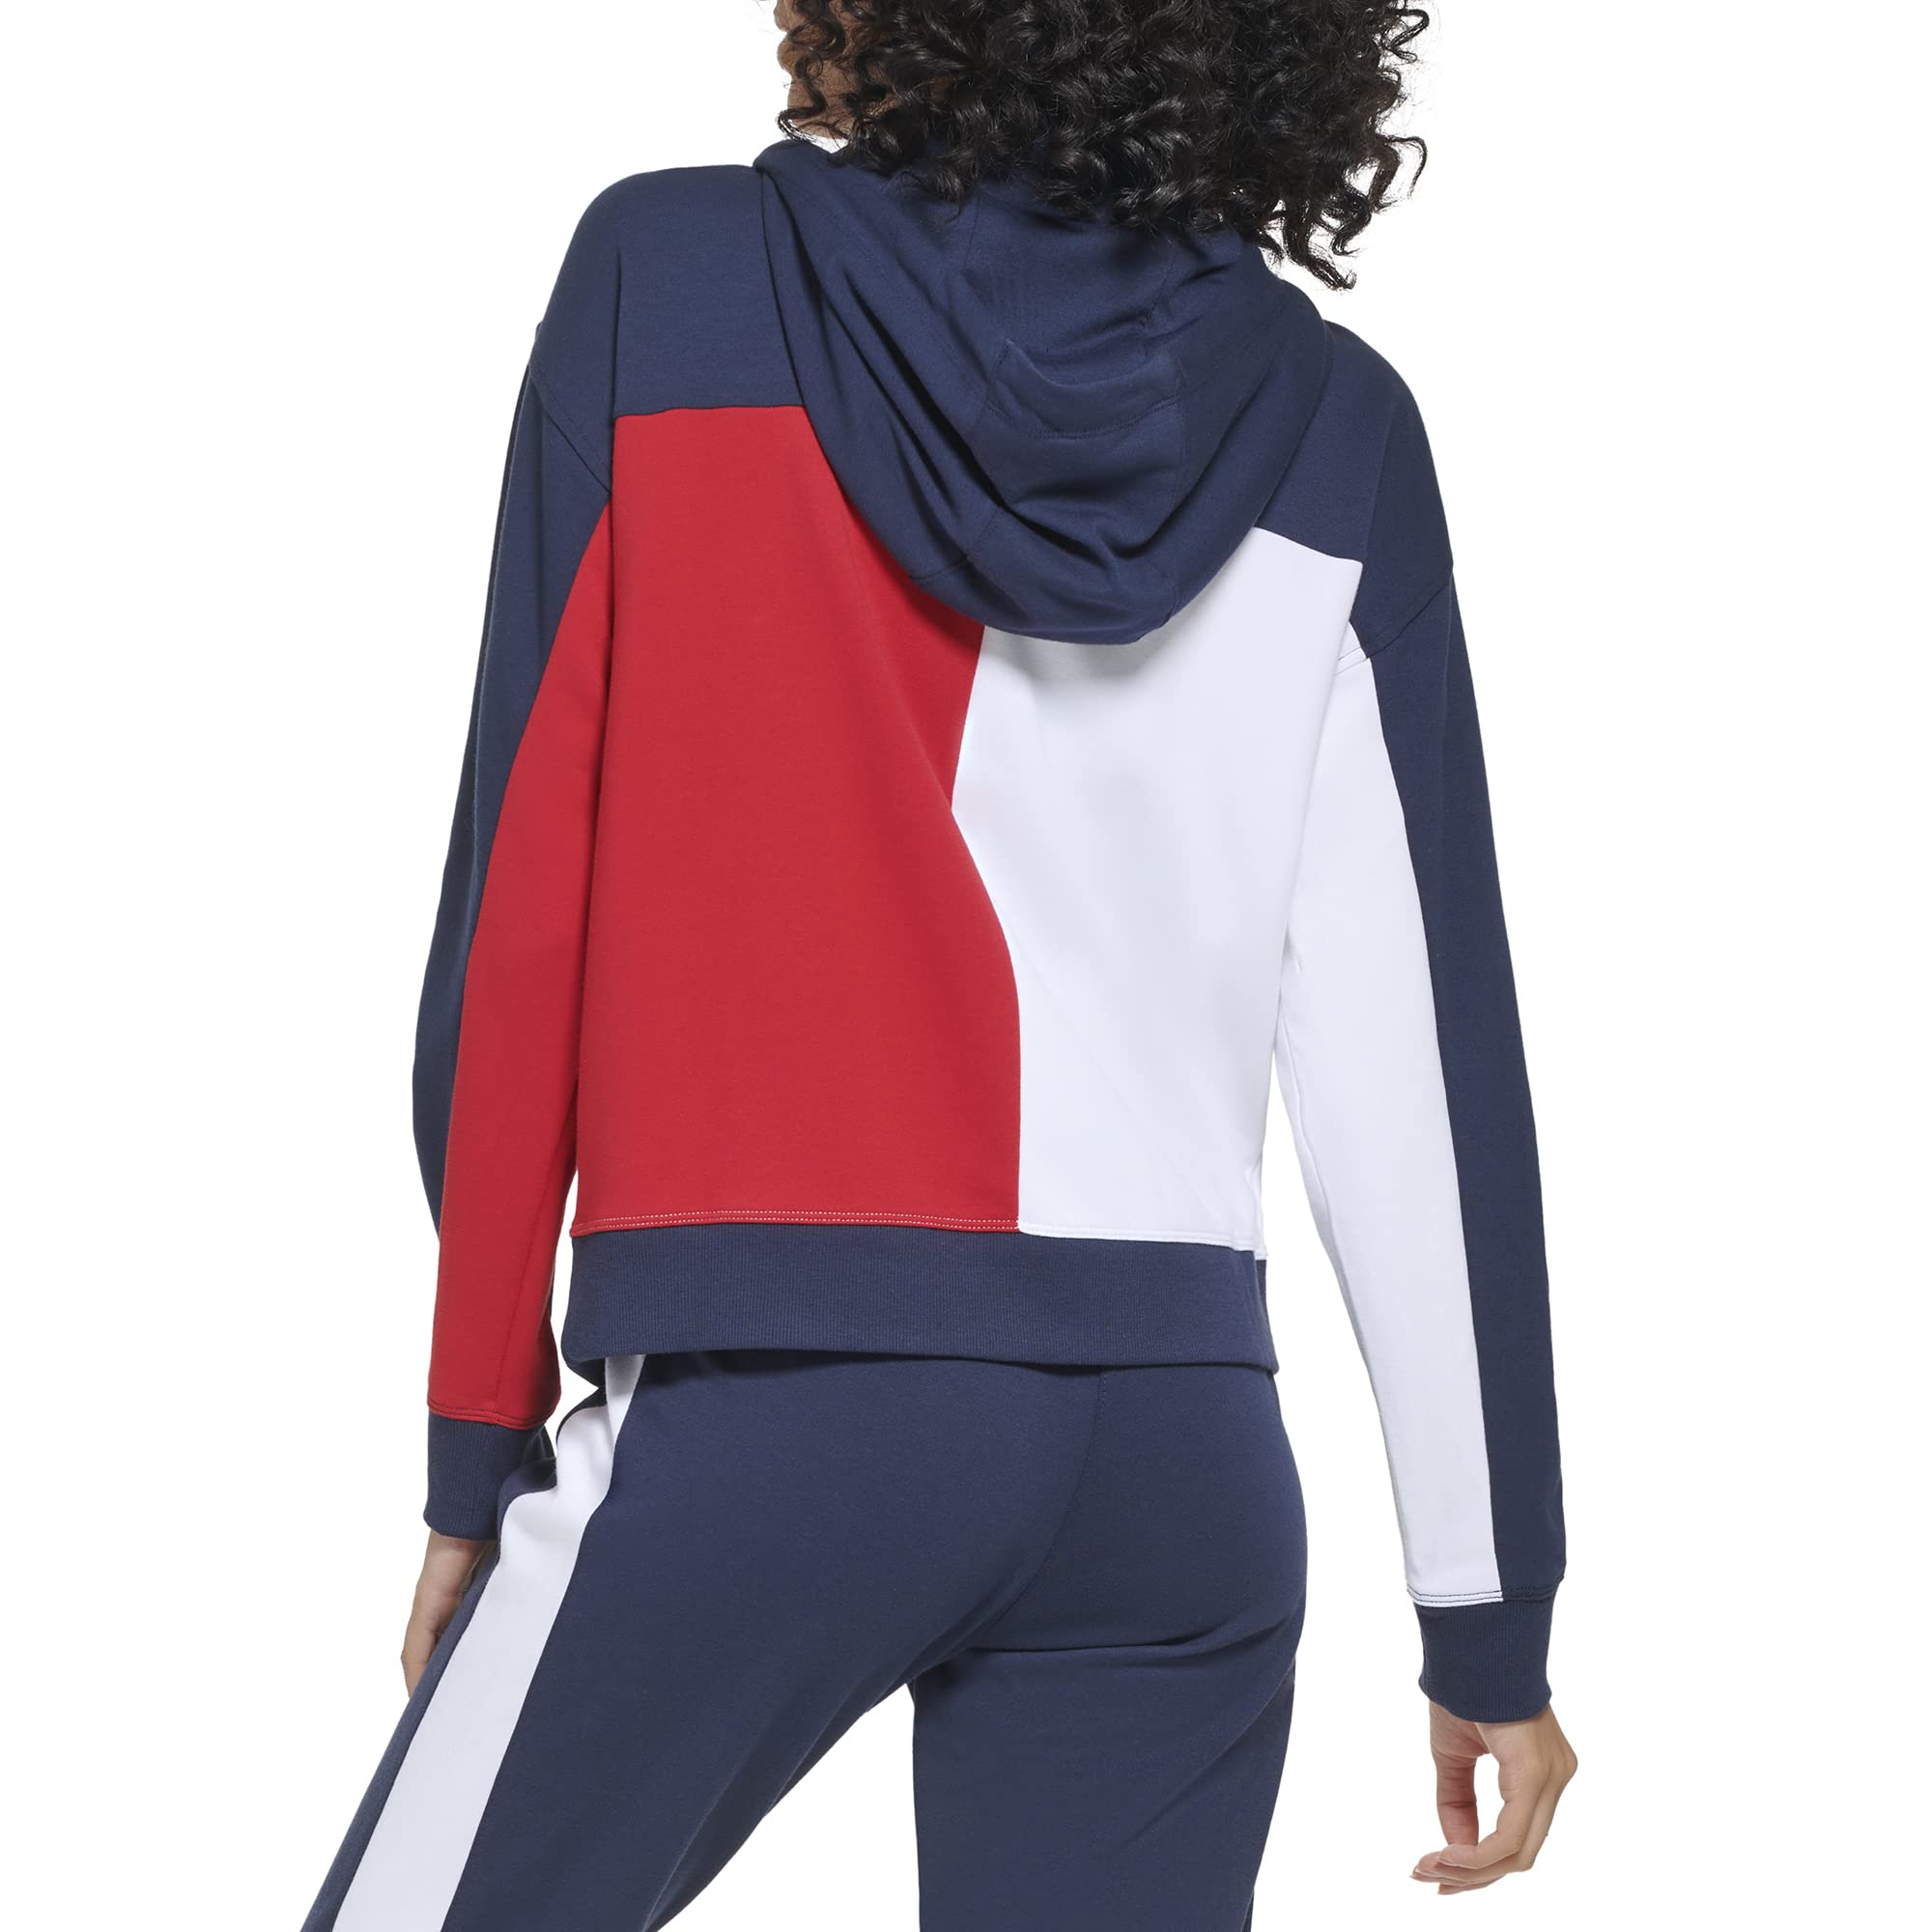 Tommy Hilfiger Women's Soft & Comfortable Fleece Colorblocked Full Zip Hoodie